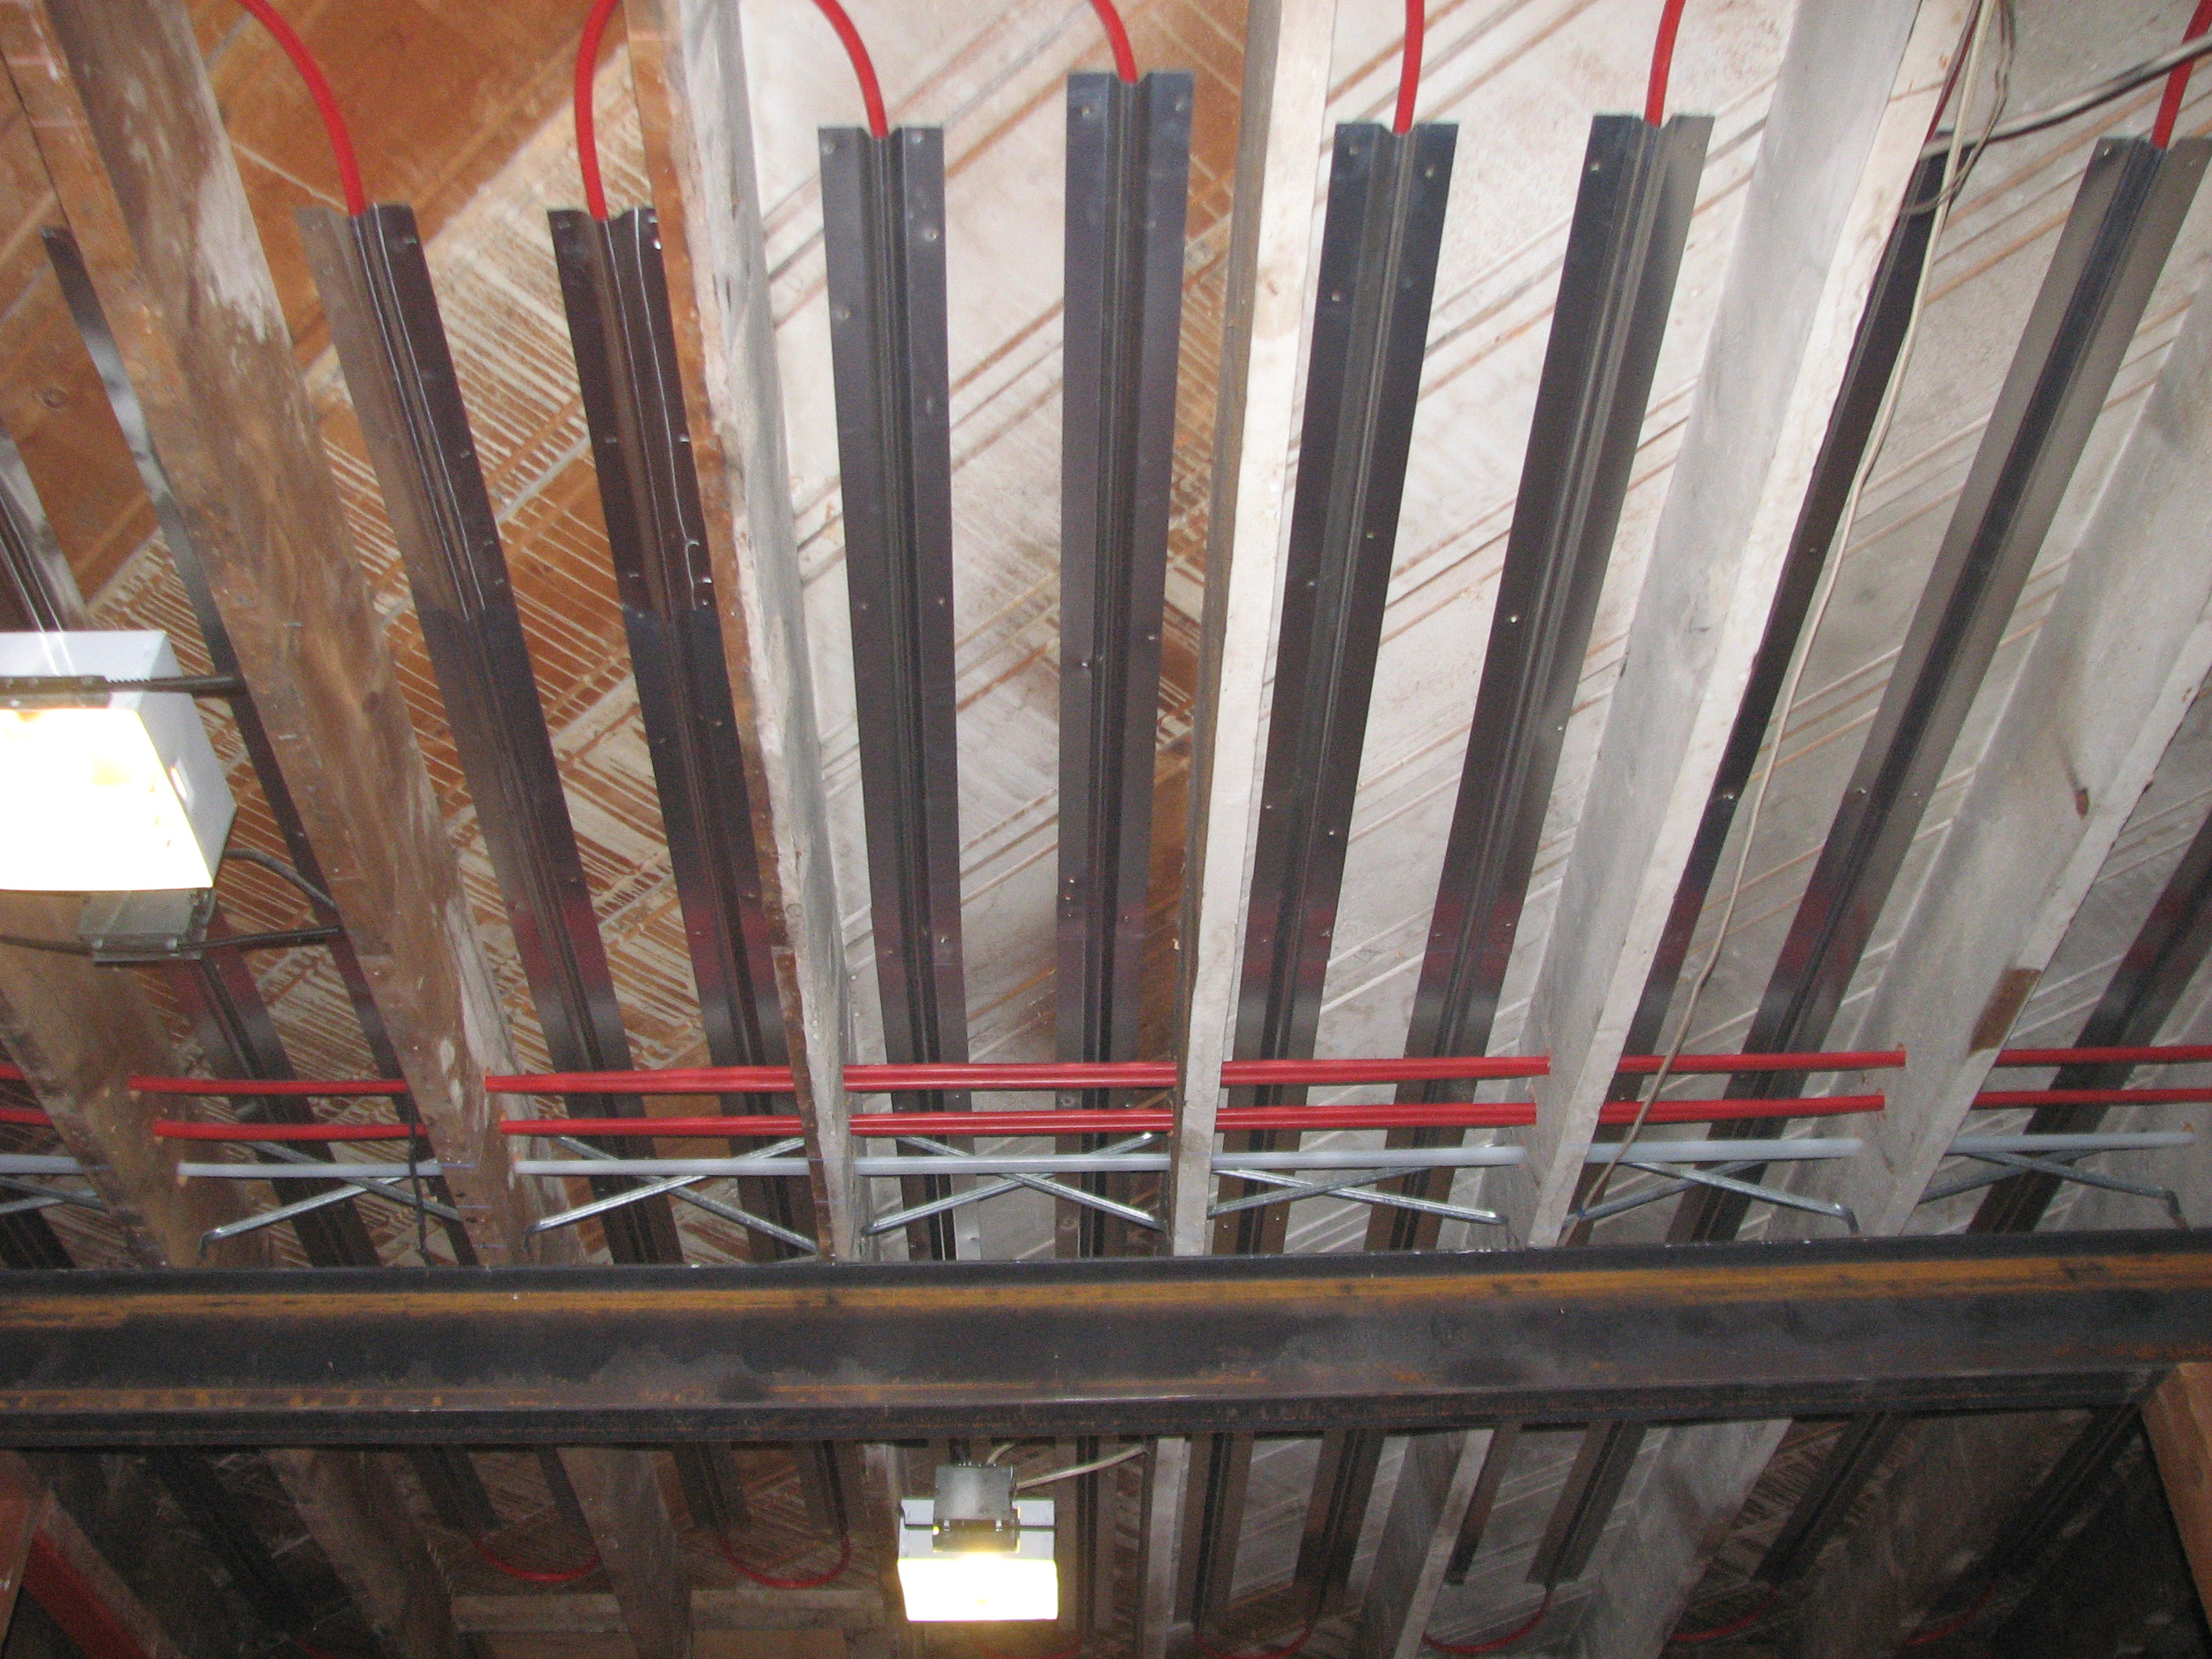 Staple-Up Pex Tubing - Radiant Heat Flooring 5 - Bend Heating - Bend Pex Tubing For Radiant Floor Heating